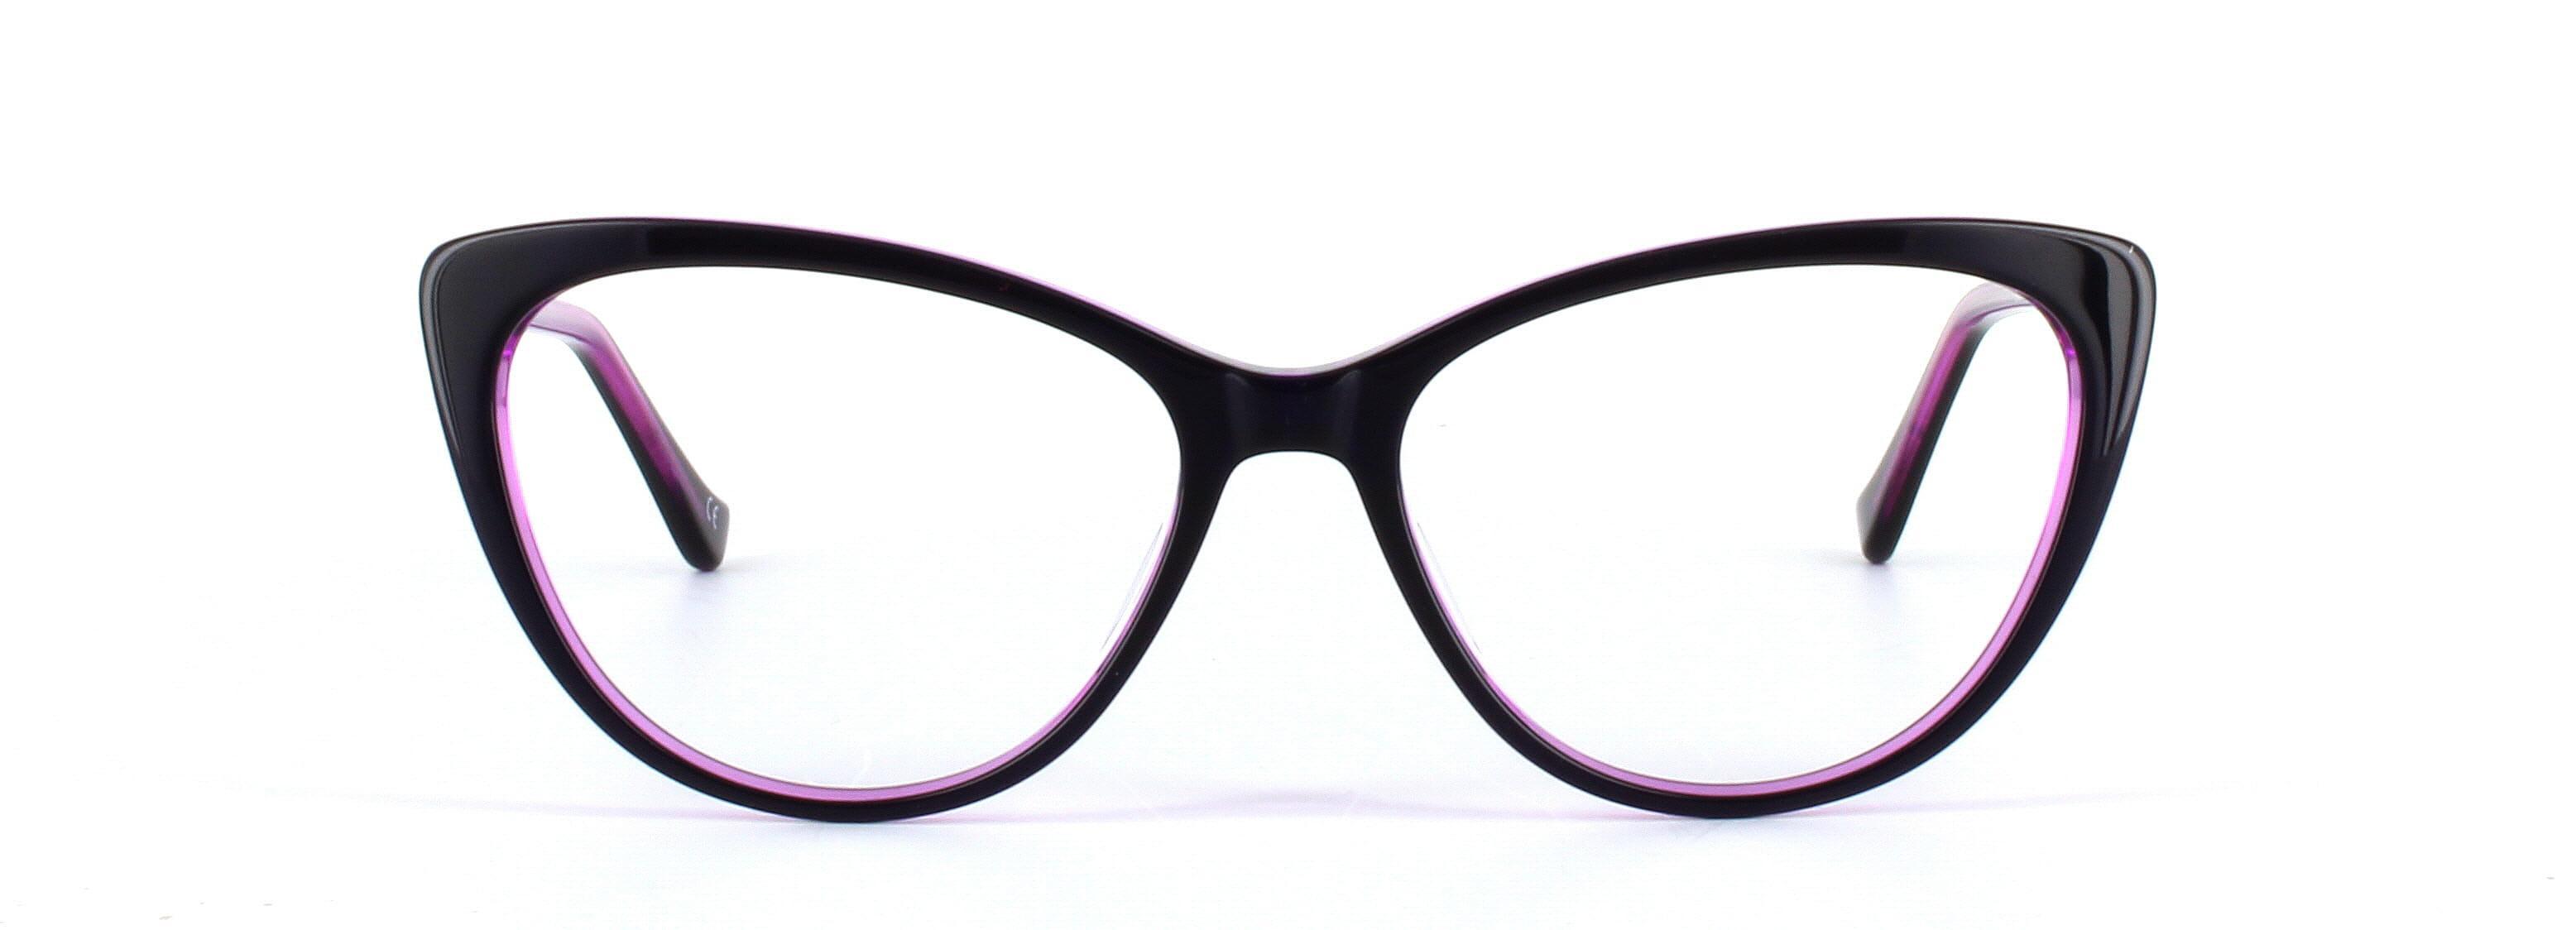 Lydia Purple Full Rim Cat Eye Acetate Glasses - Image View 5